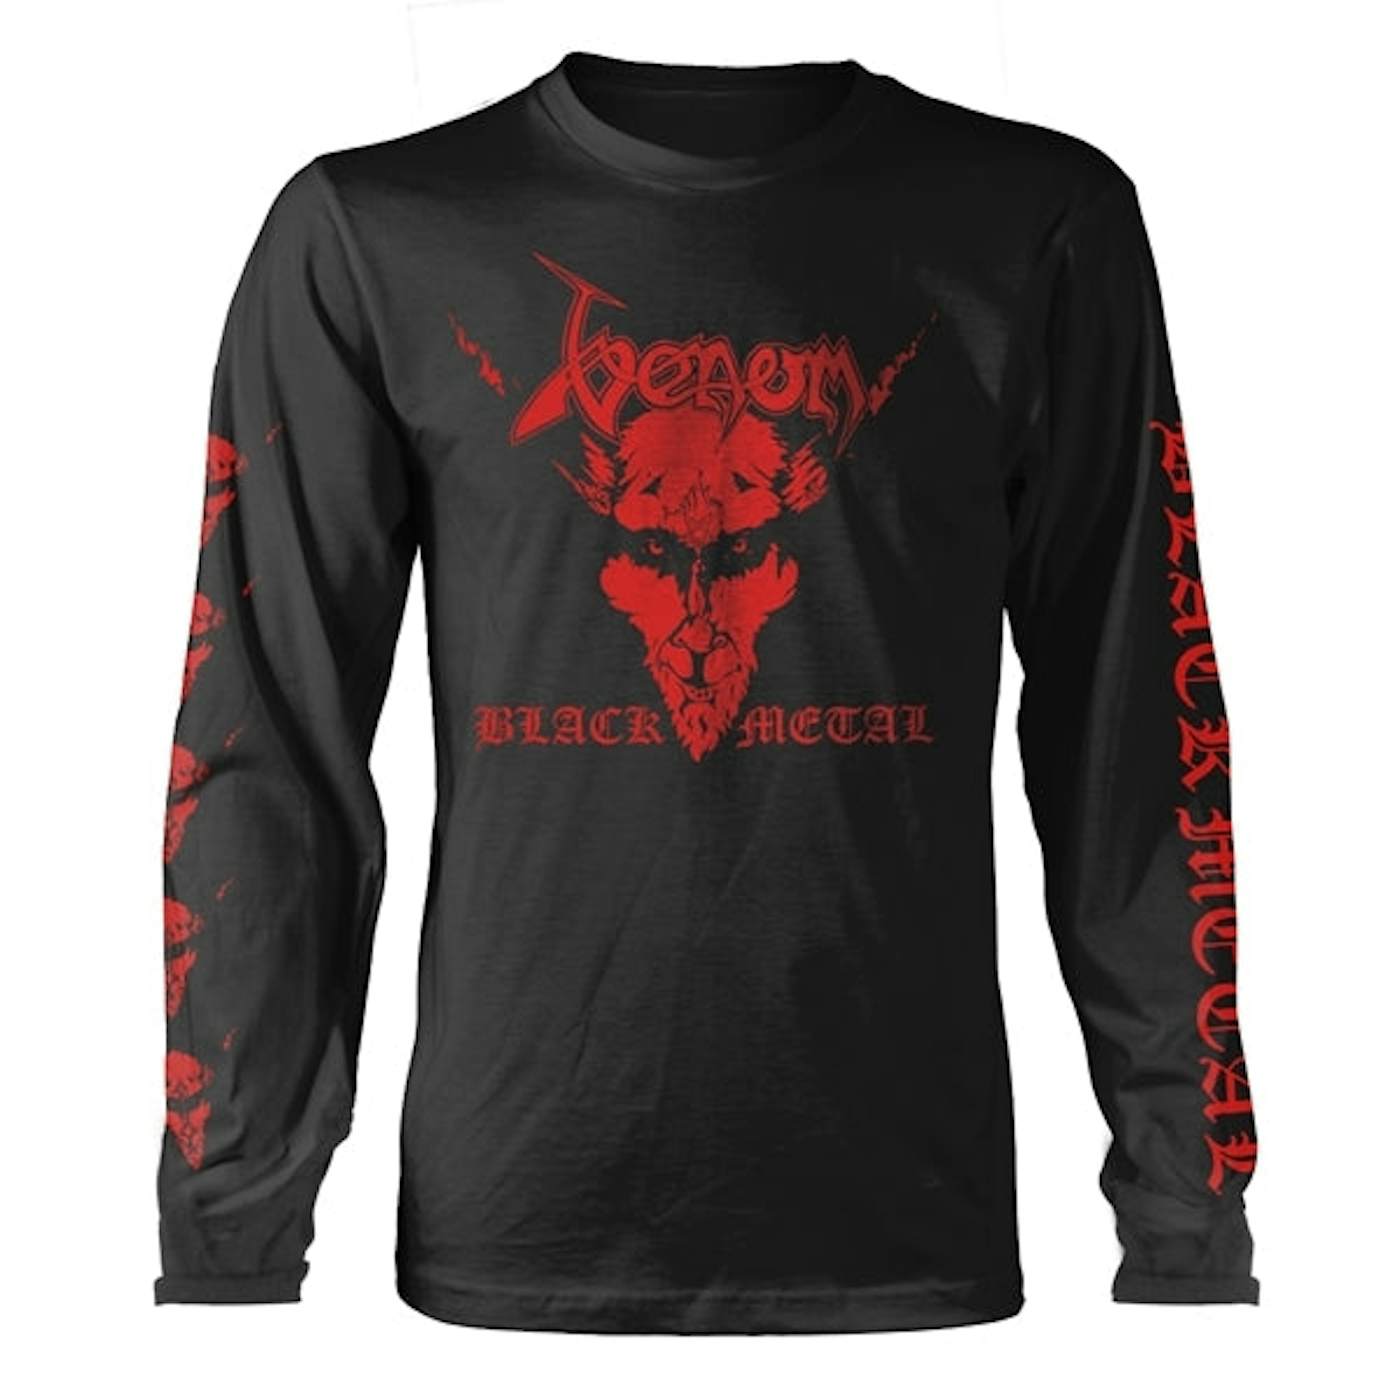  Venom Long Sleeve T Shirt - Black Metal (Red)